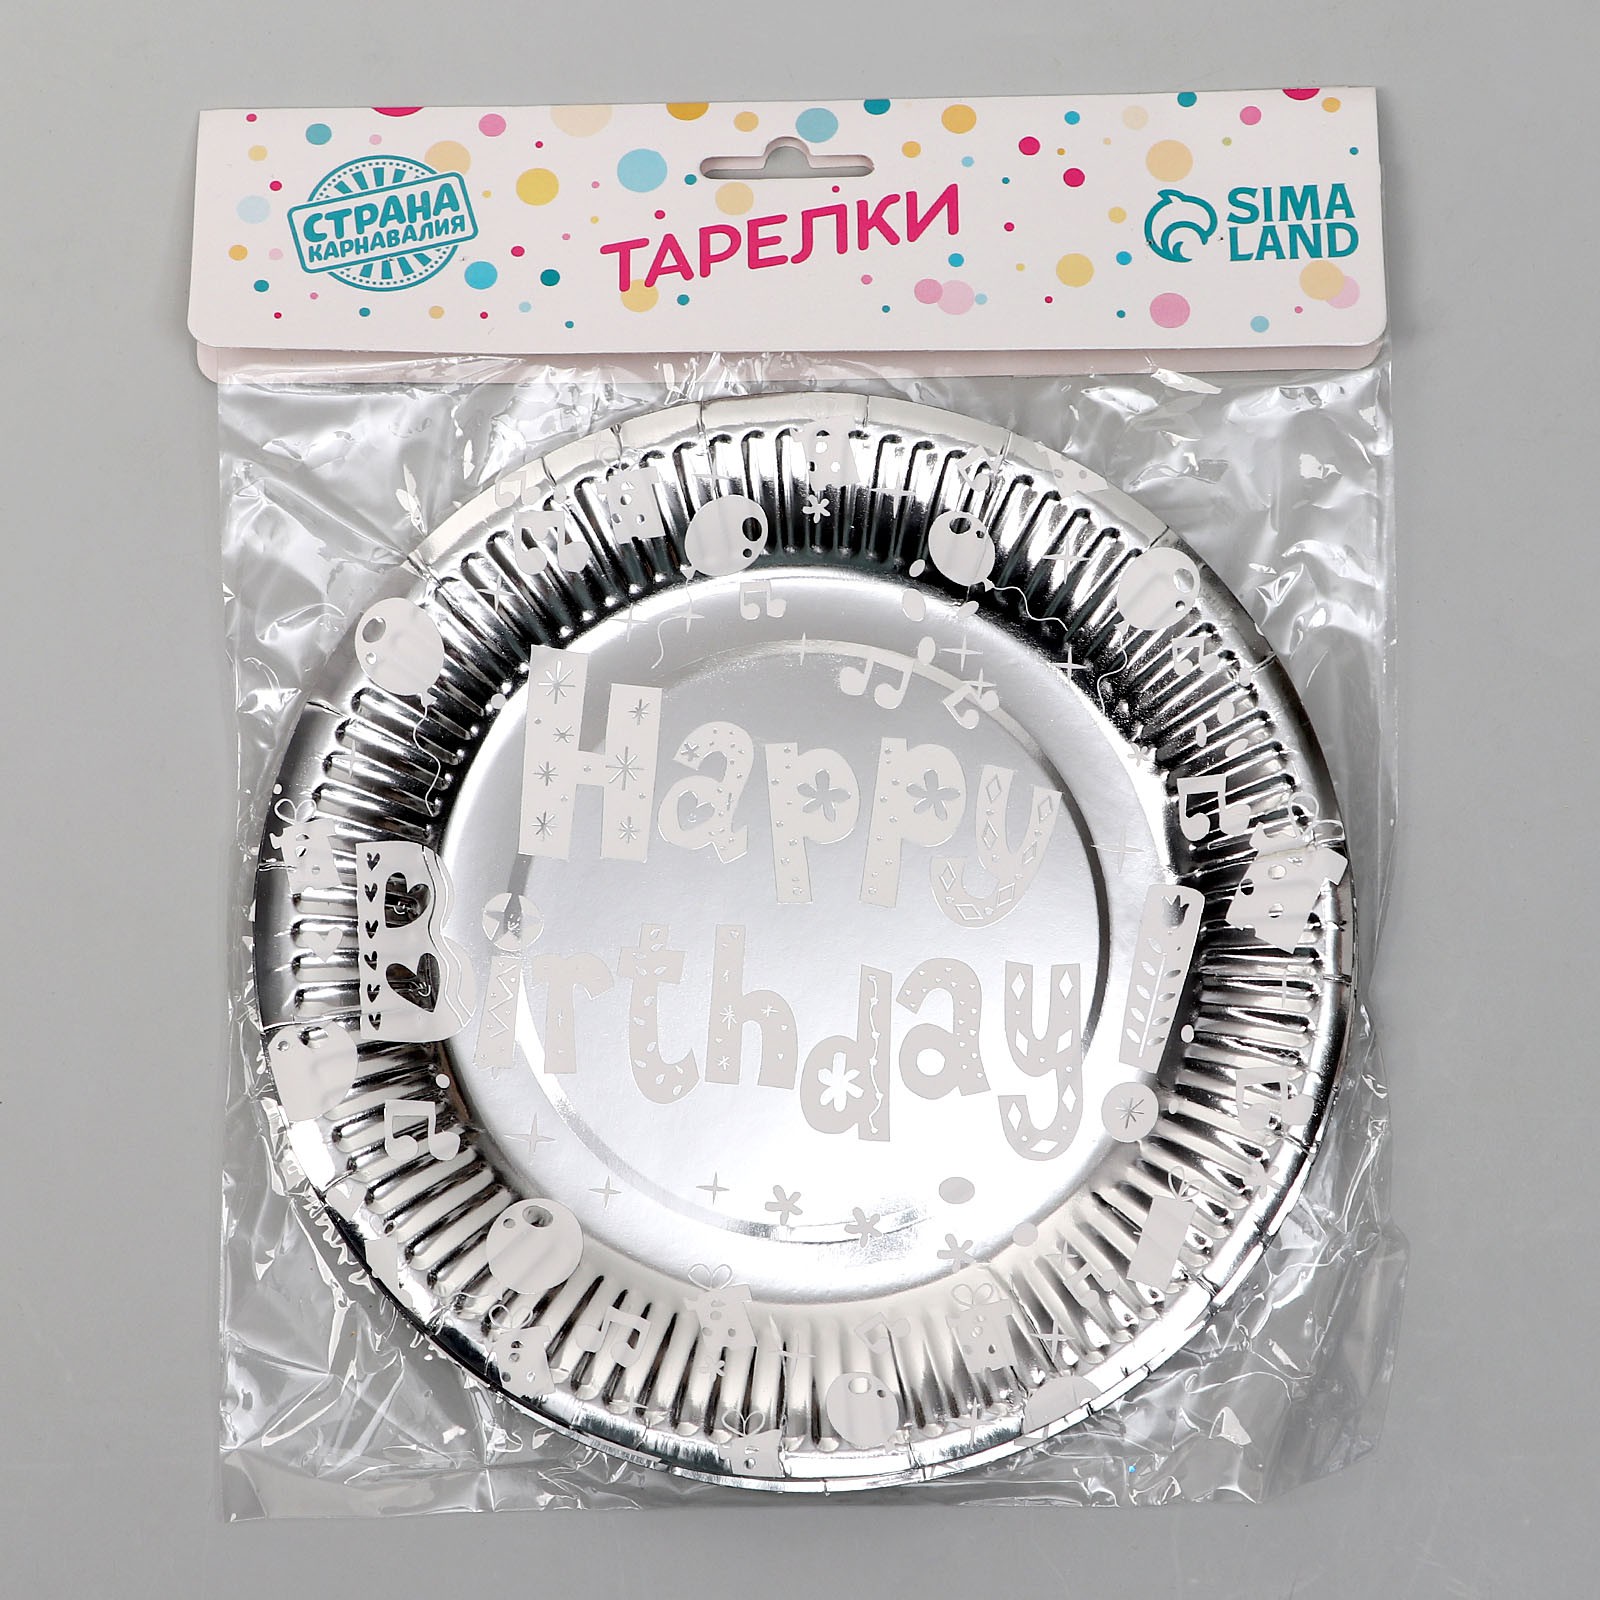 Тарелки Страна карнавалия бумажные «С днём рождения» набор 6 шт. цвет серебро - фото 3